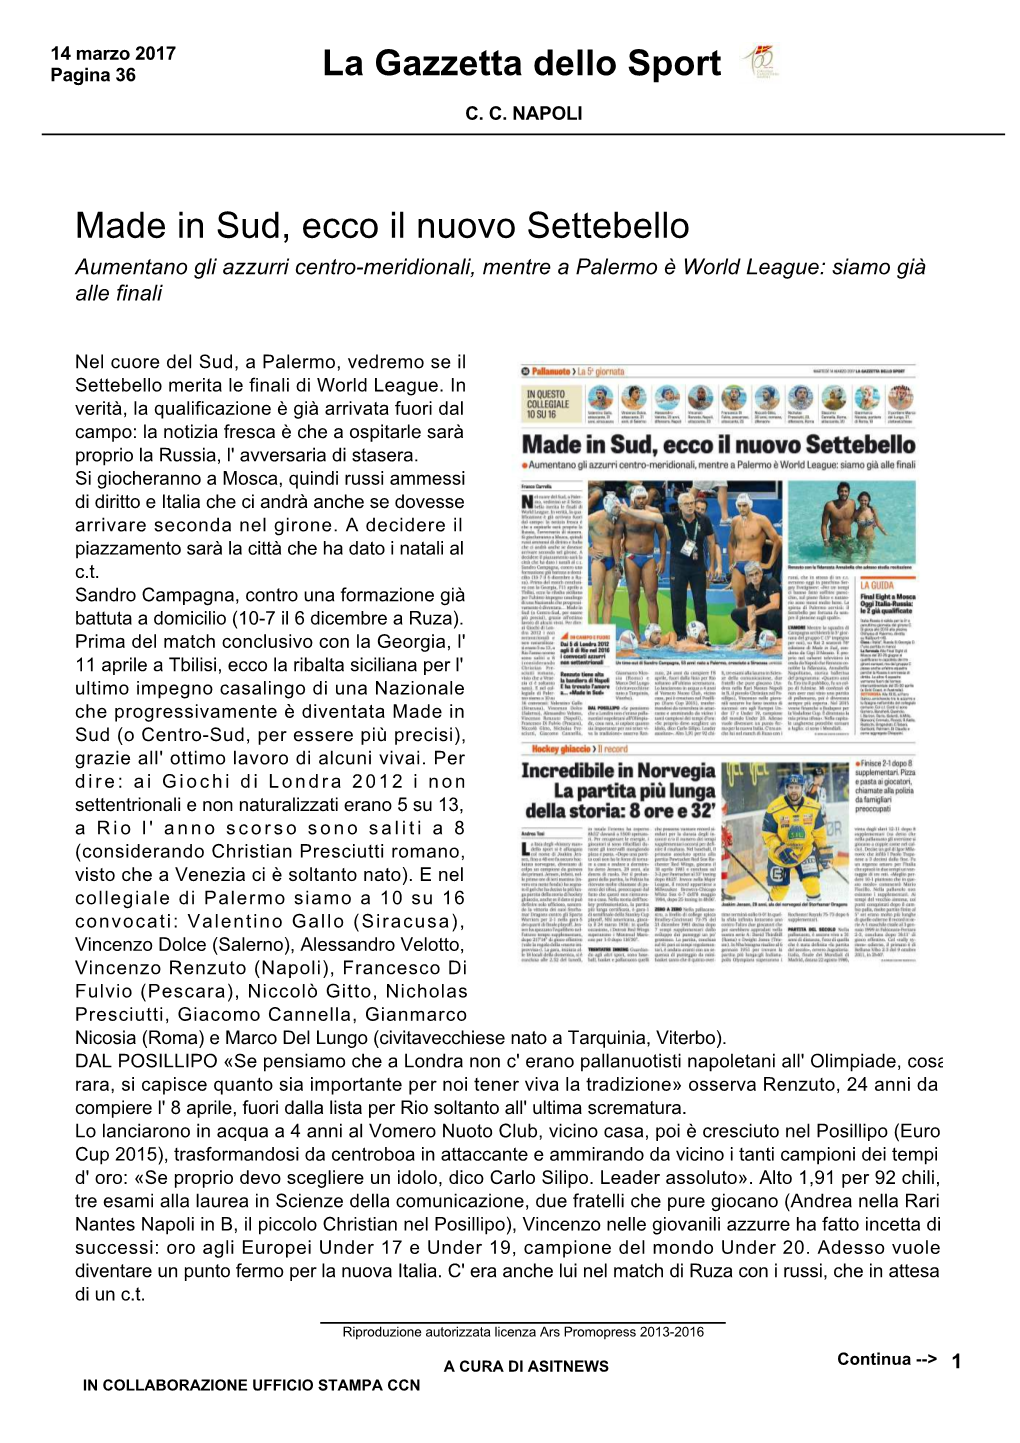 Made in Sud, Ecco Il Nuovo Settebello La Gazzetta Dello Sport